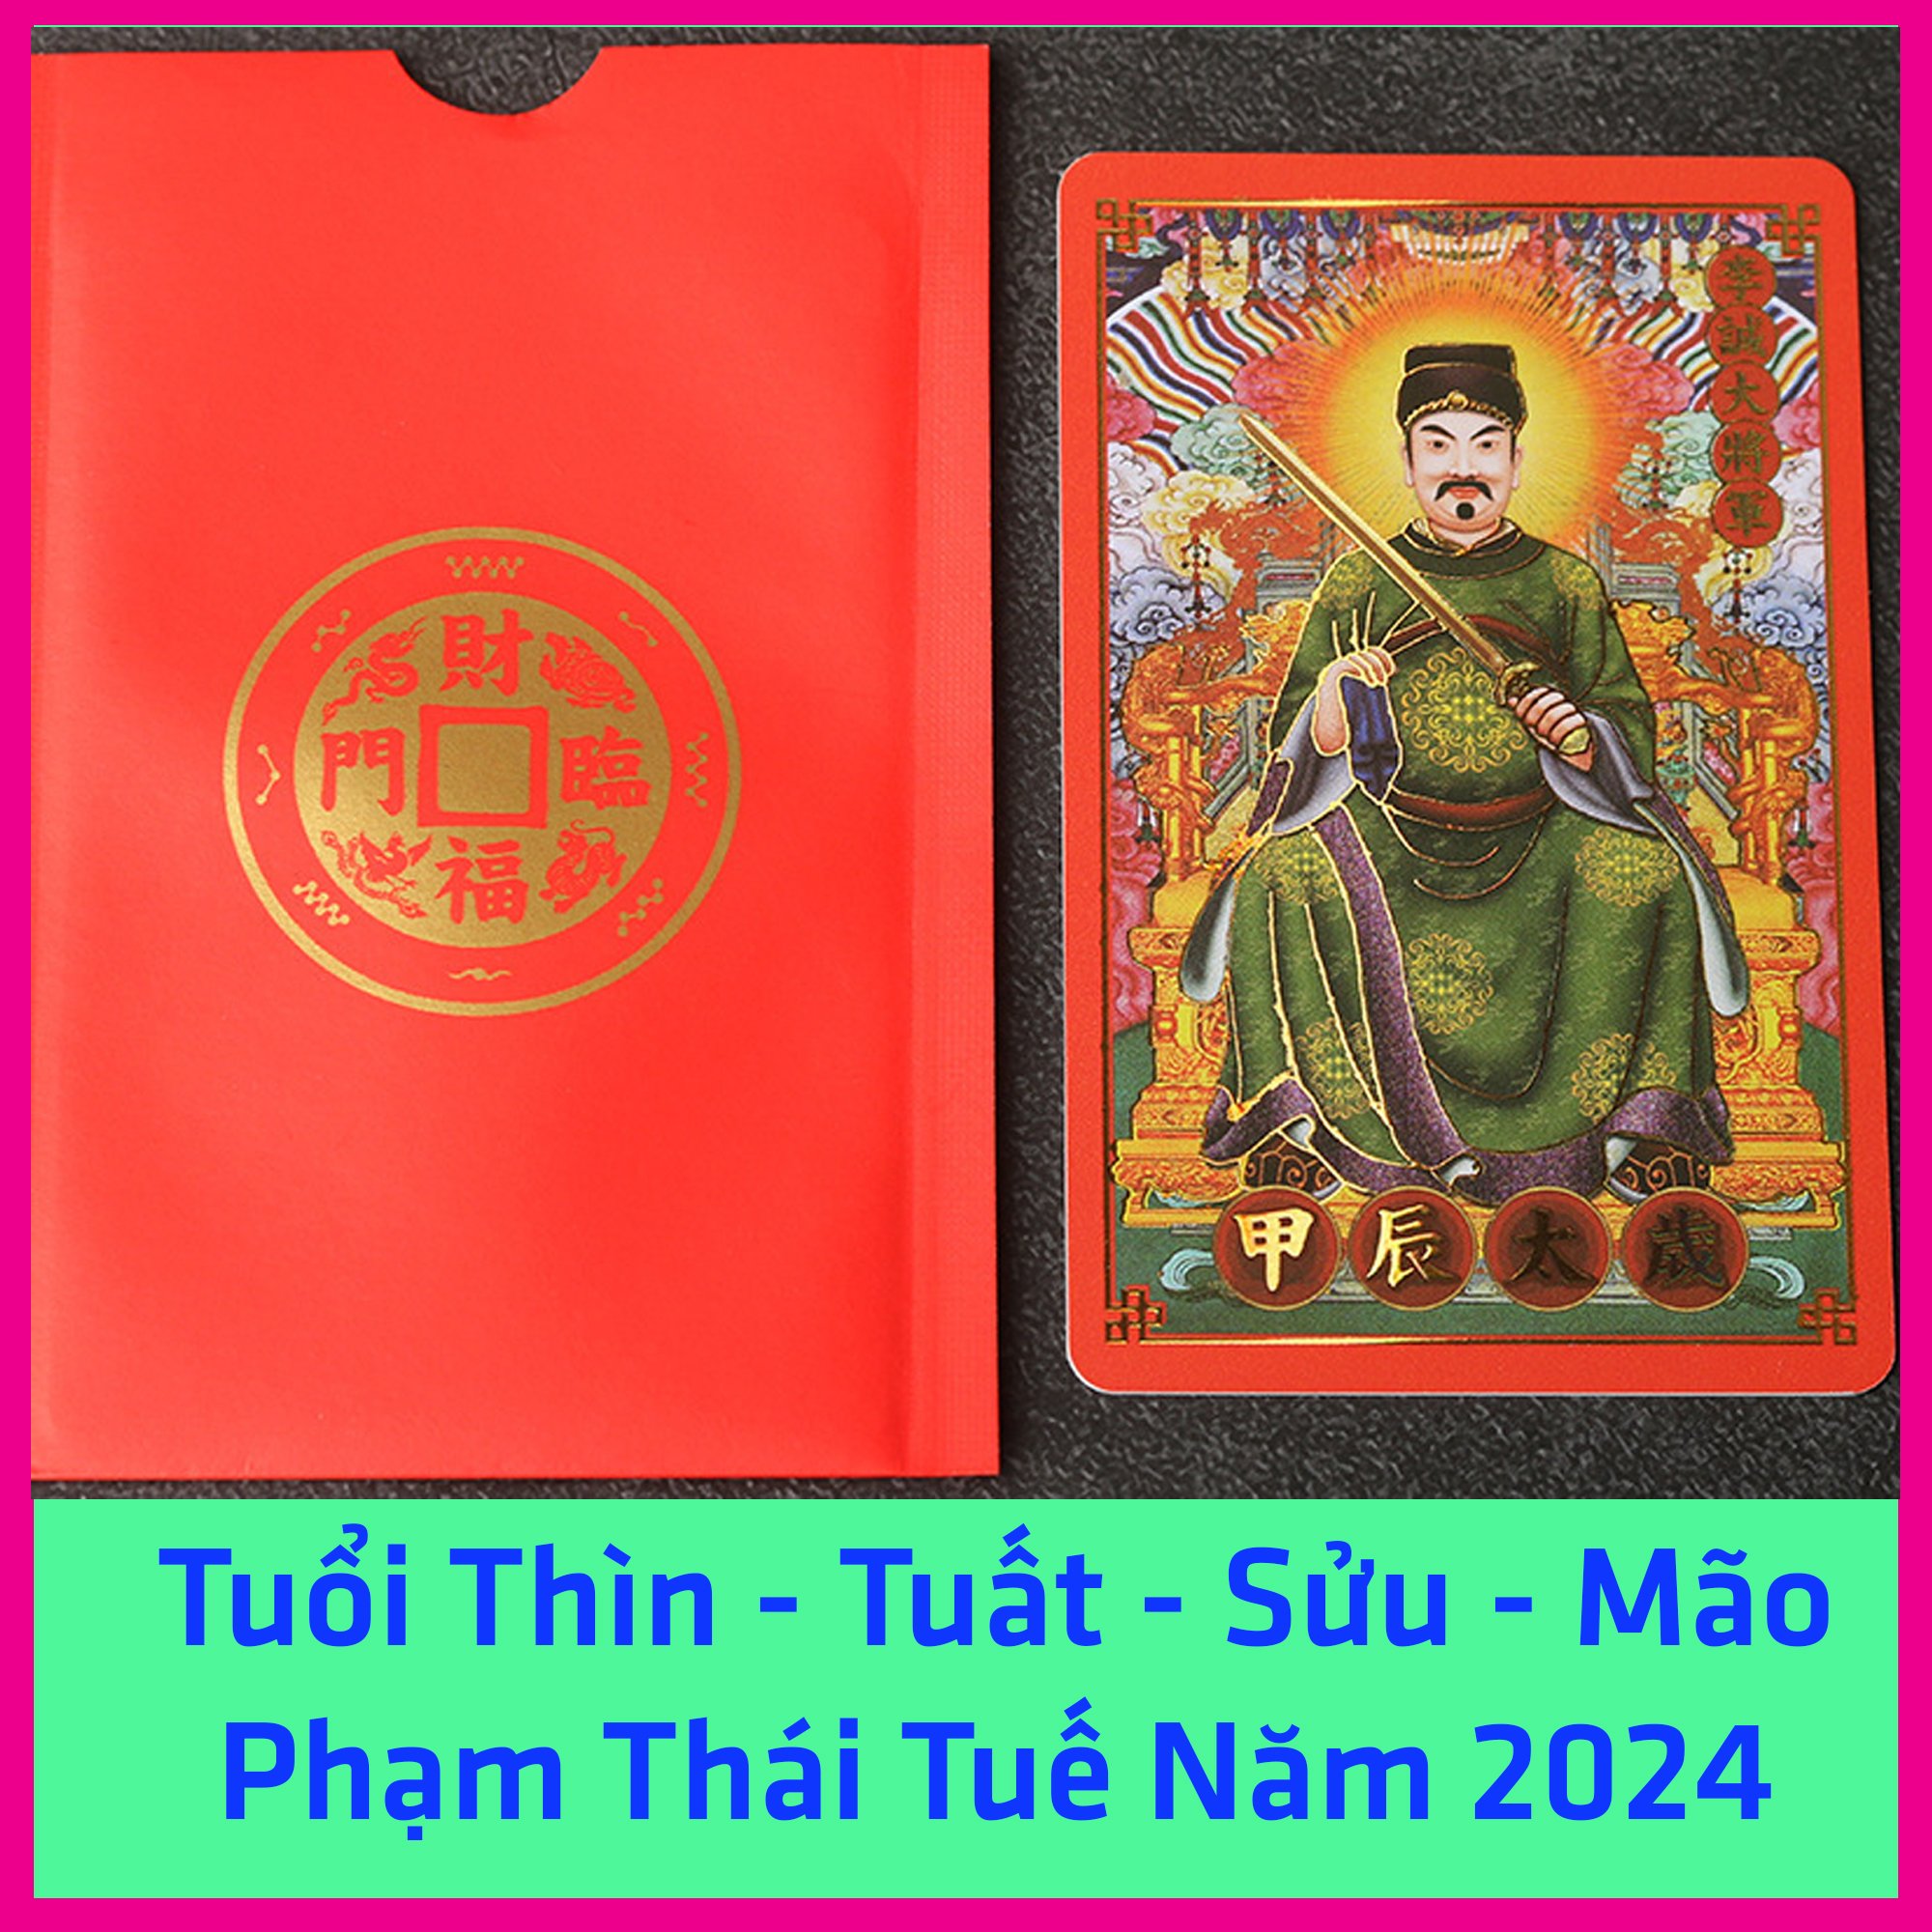 Kim bài Thái Tuế 2024 Thái Tuế Phù Thái Tuế 2024 Hóa giải hạn năm 2024 Phù Thái Tuế Giáp Thìn 2024 Cho Tuổi Thìn Tuất Sửu Mão